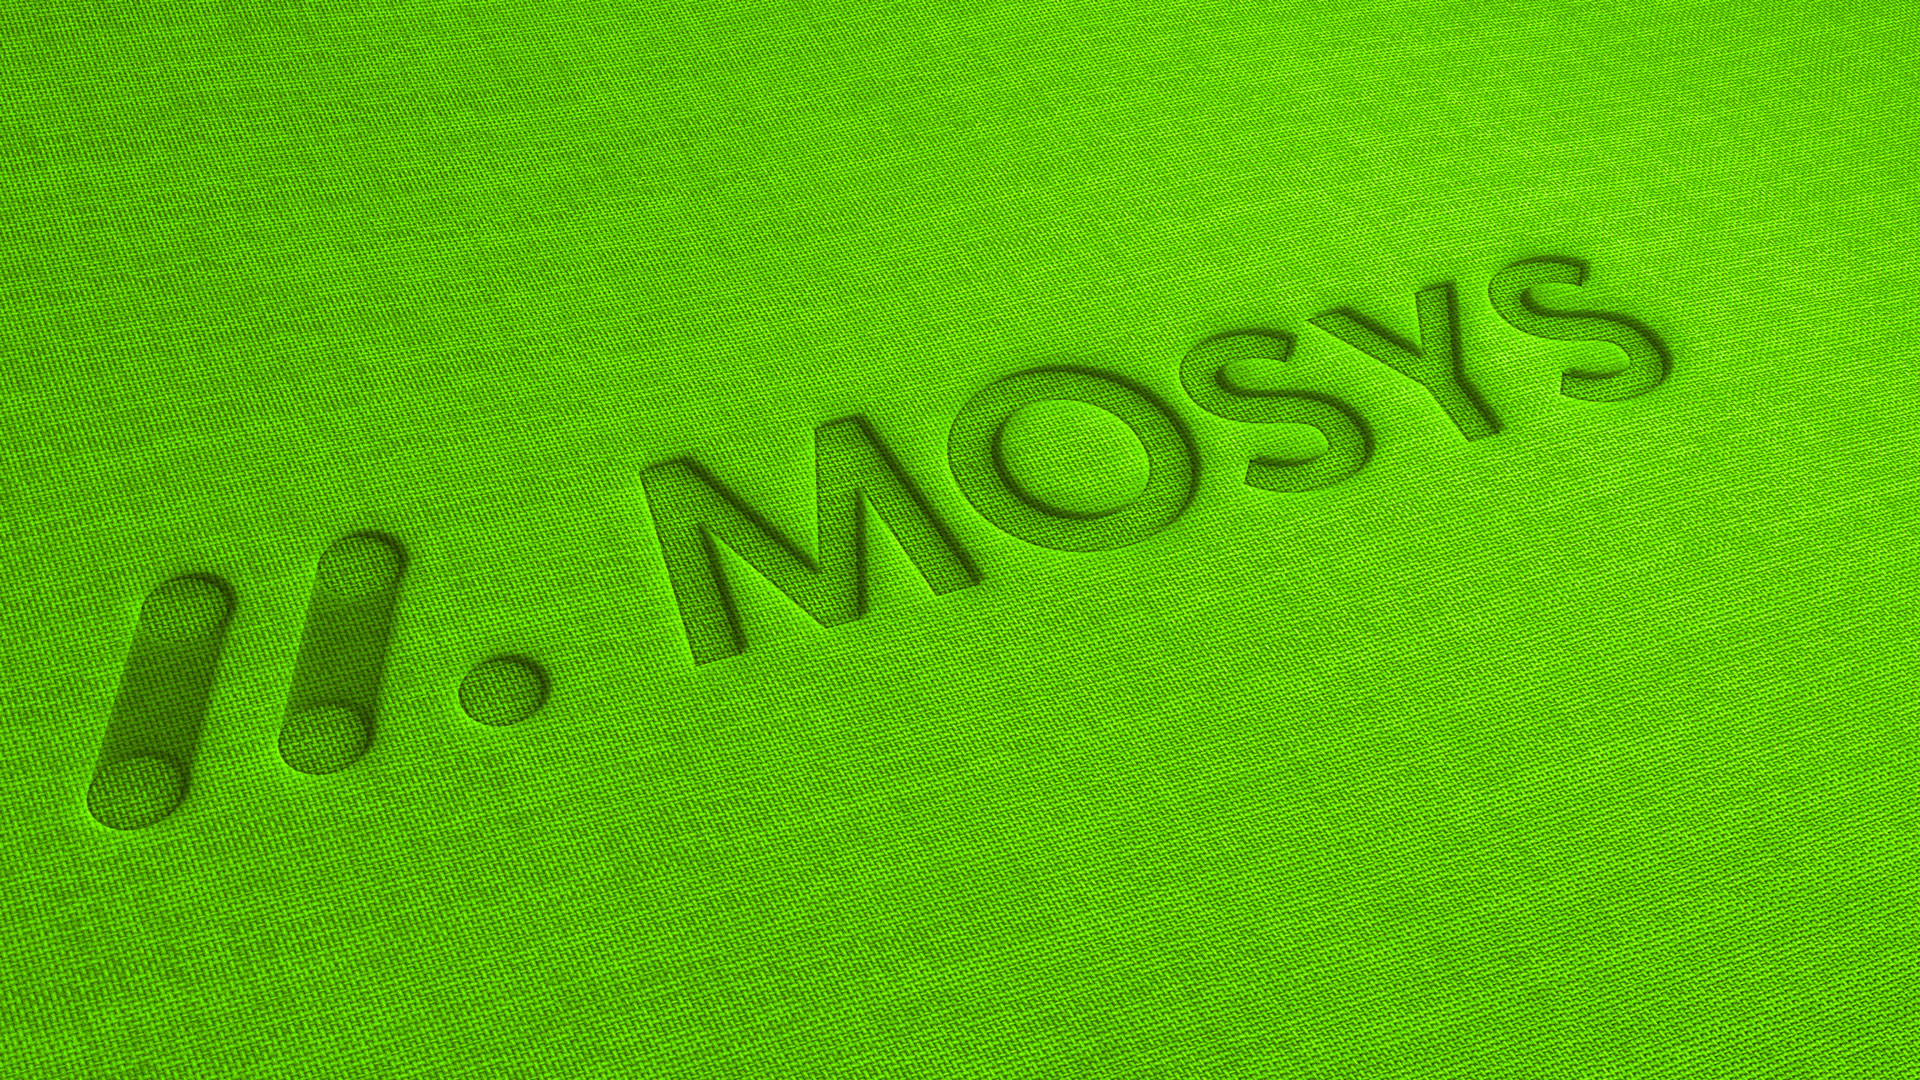 mosys_Logo_closeup